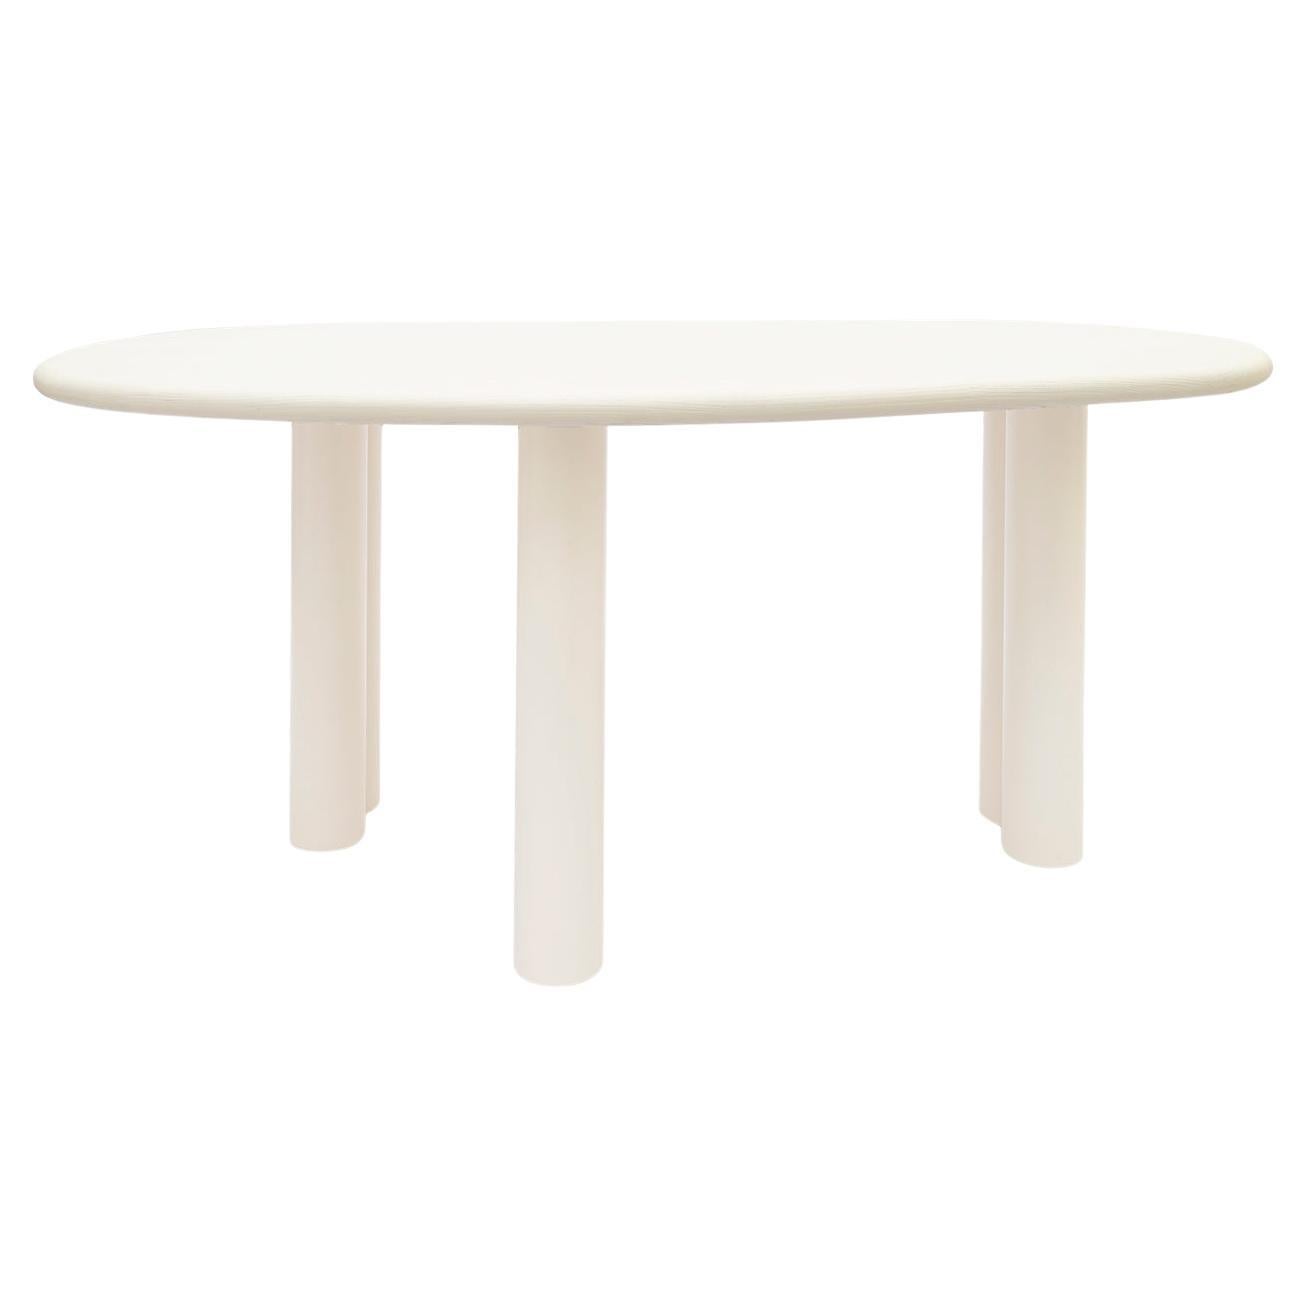 Objekt 081 Tisch von NG Design